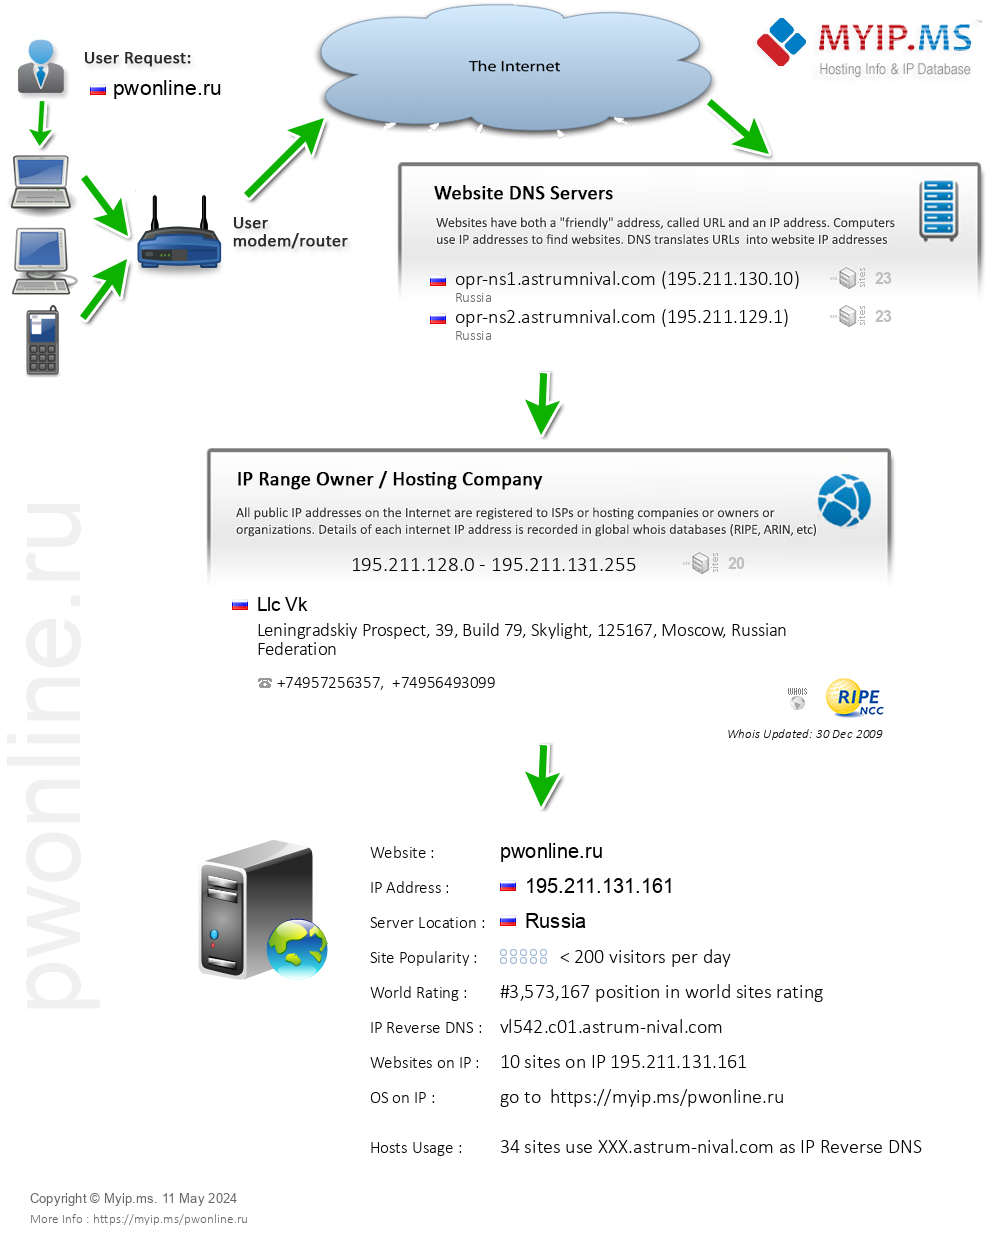 Pwonline.ru - Website Hosting Visual IP Diagram